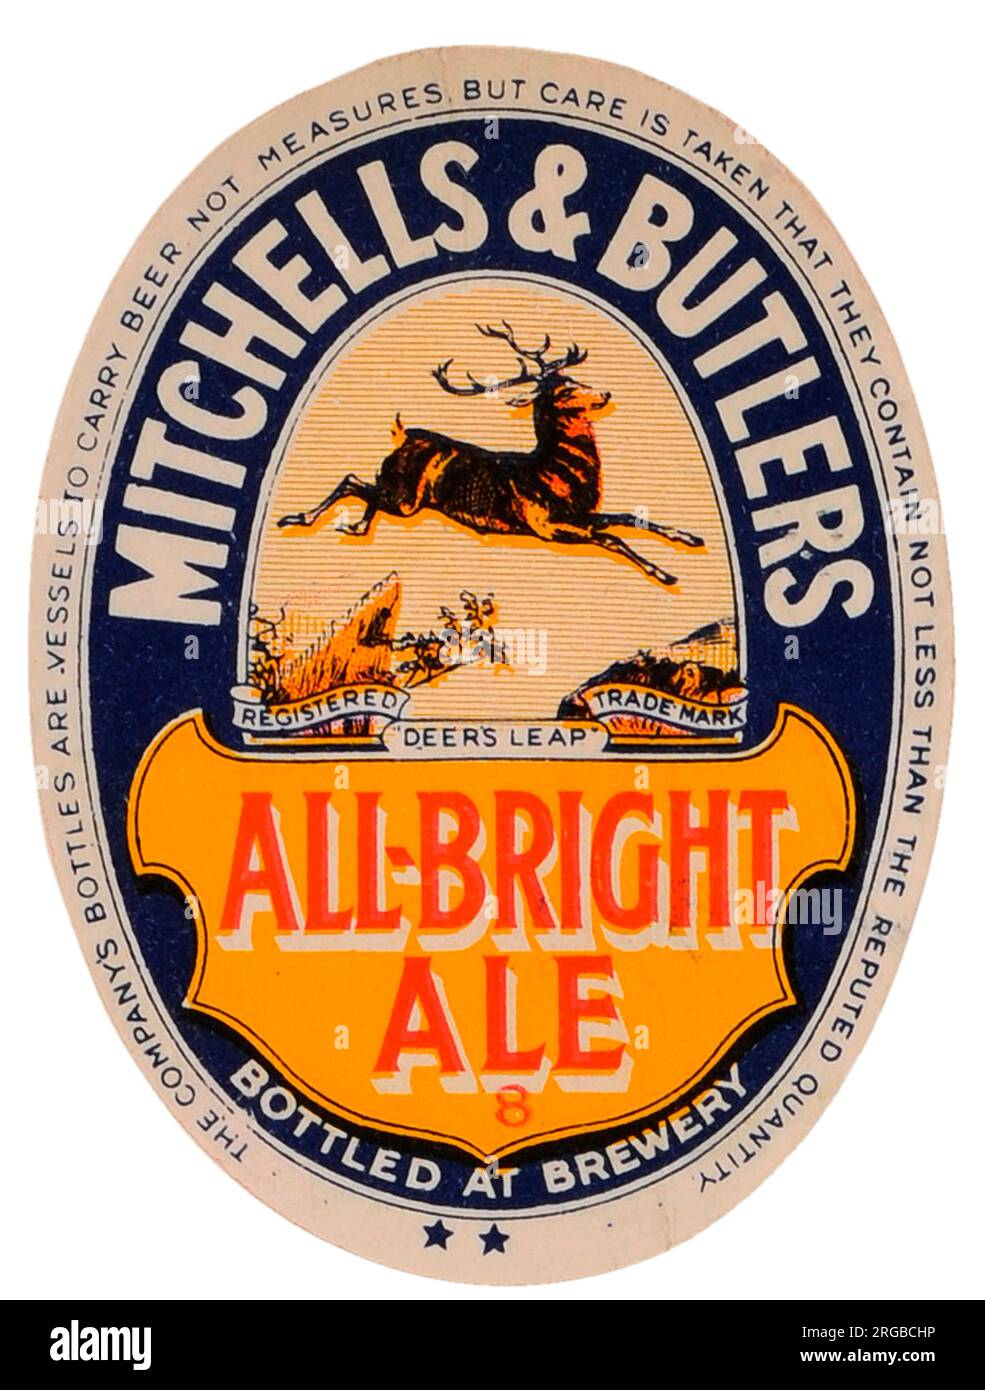 M&B All-Bright Ale Stock Photo